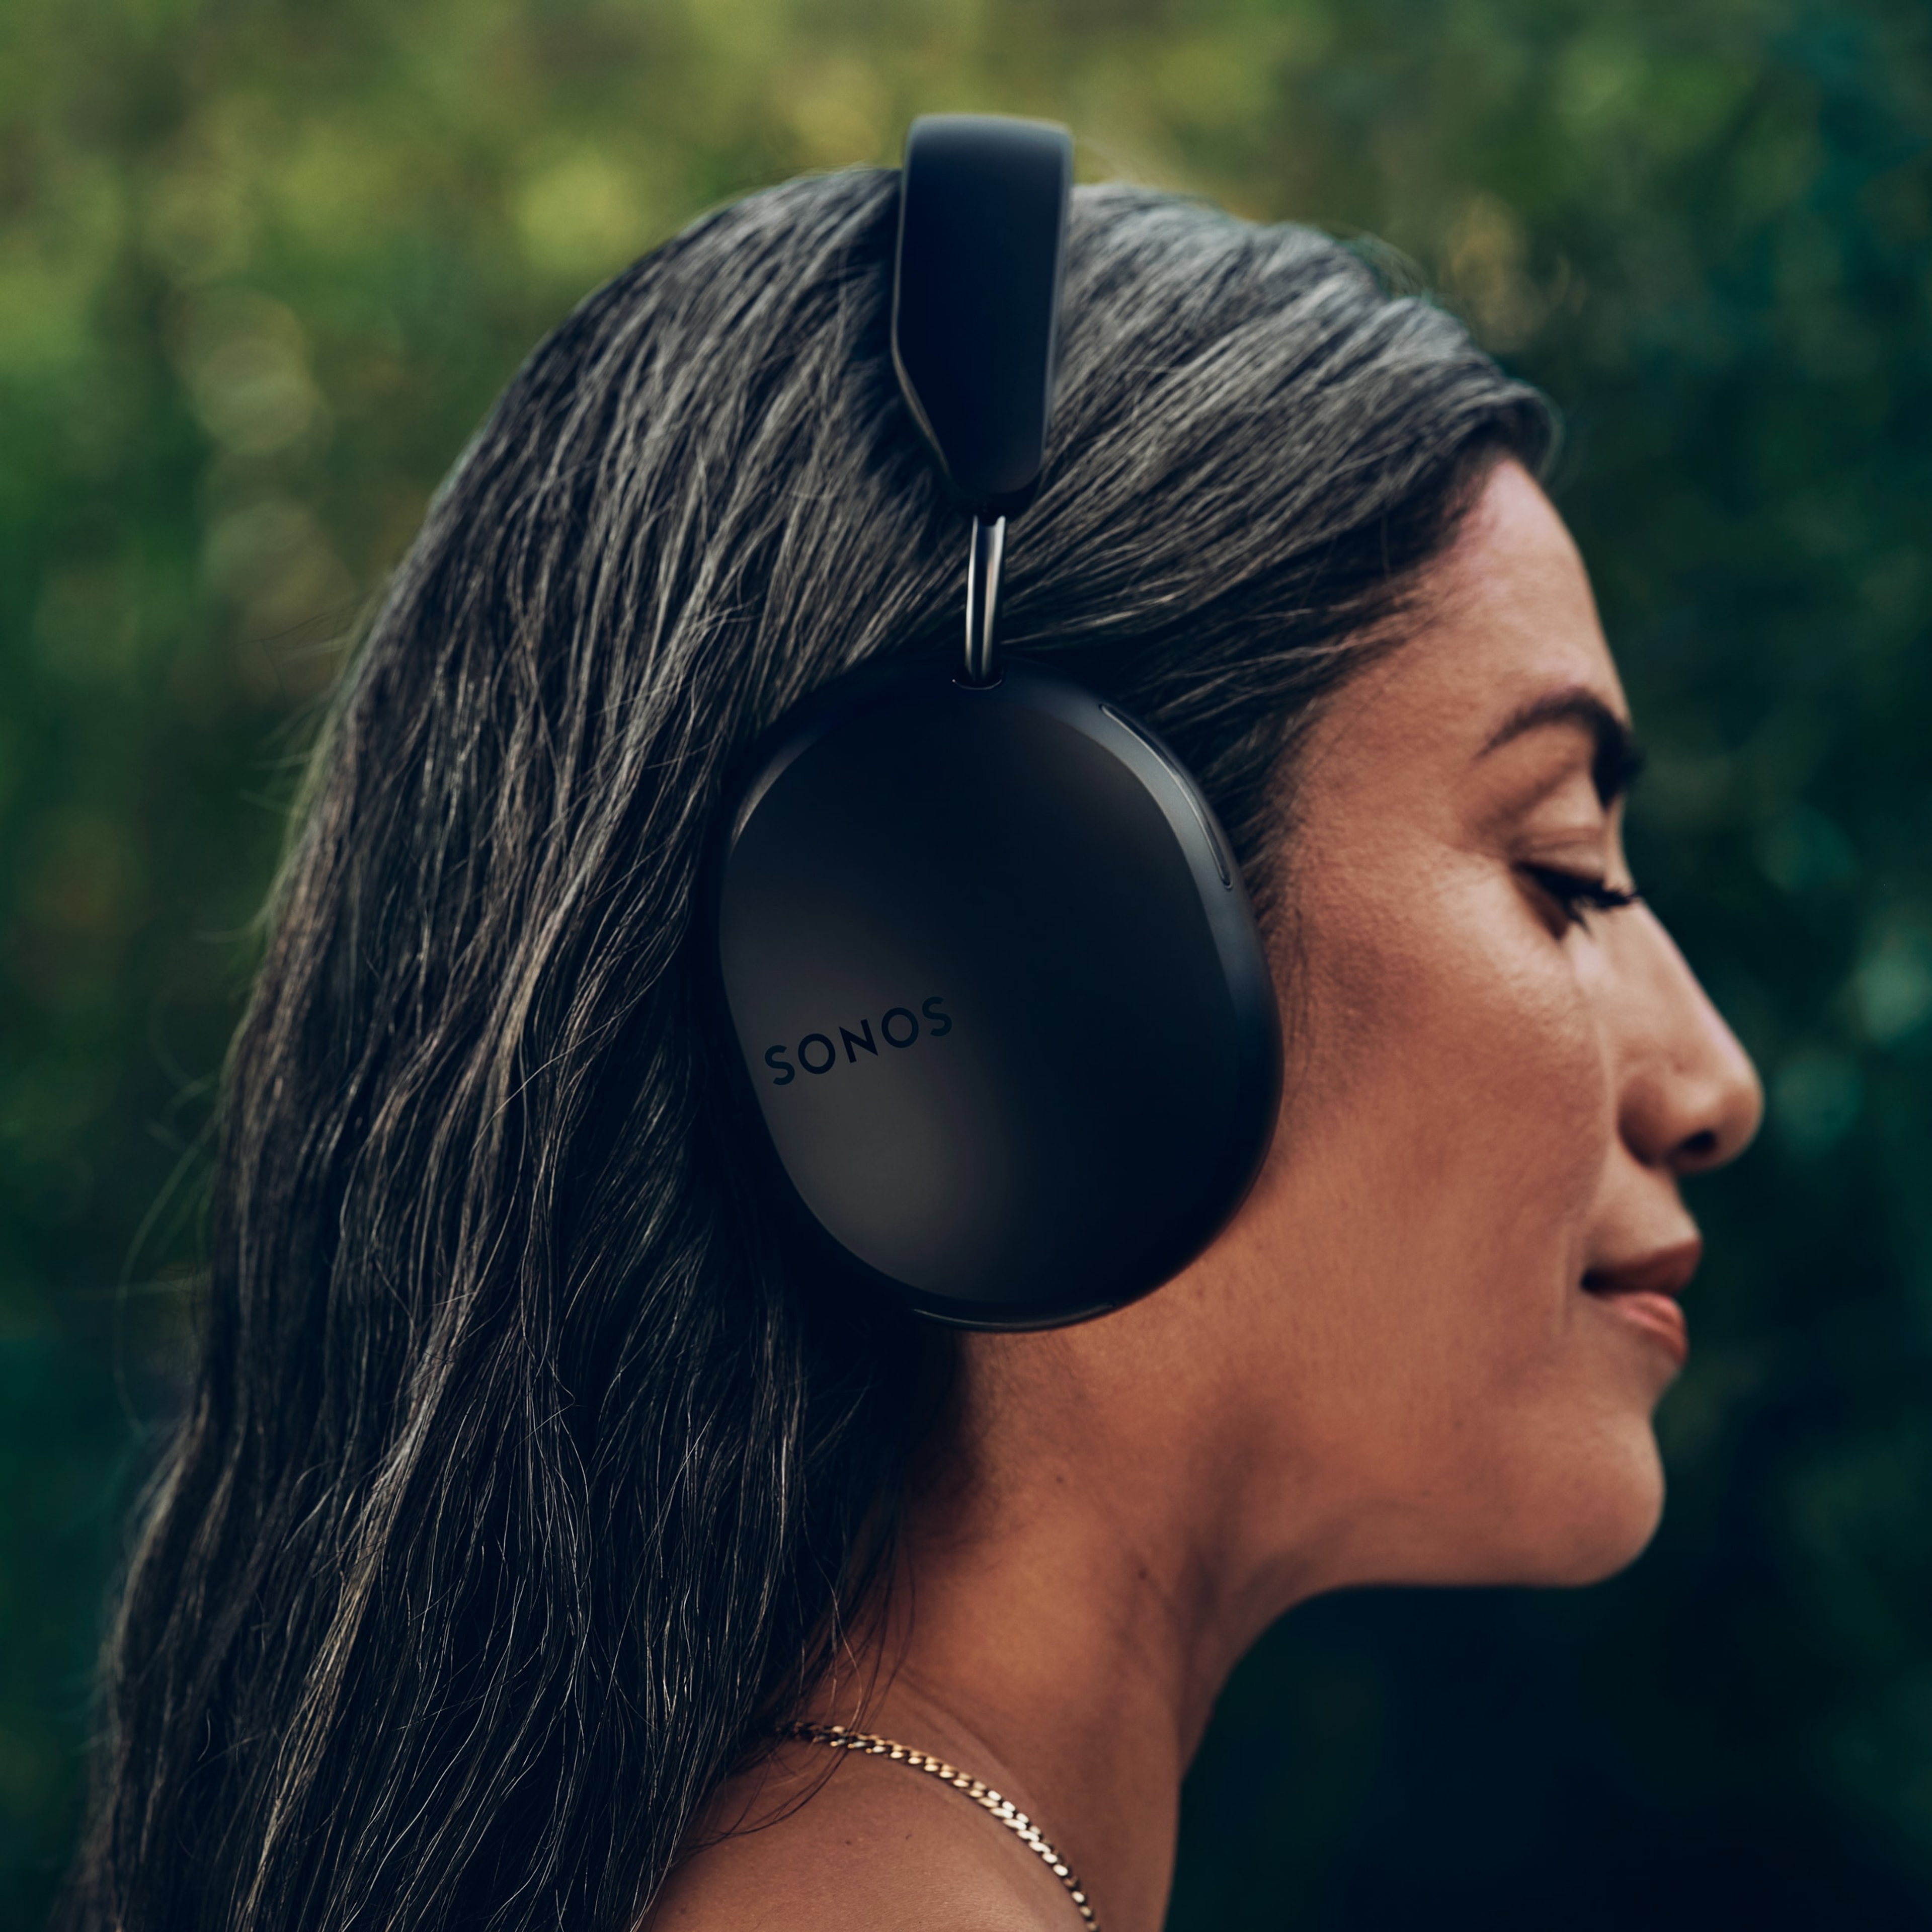 Profil latéral d’une femme portant une paire d’écouteurs Sonos Ace noirs